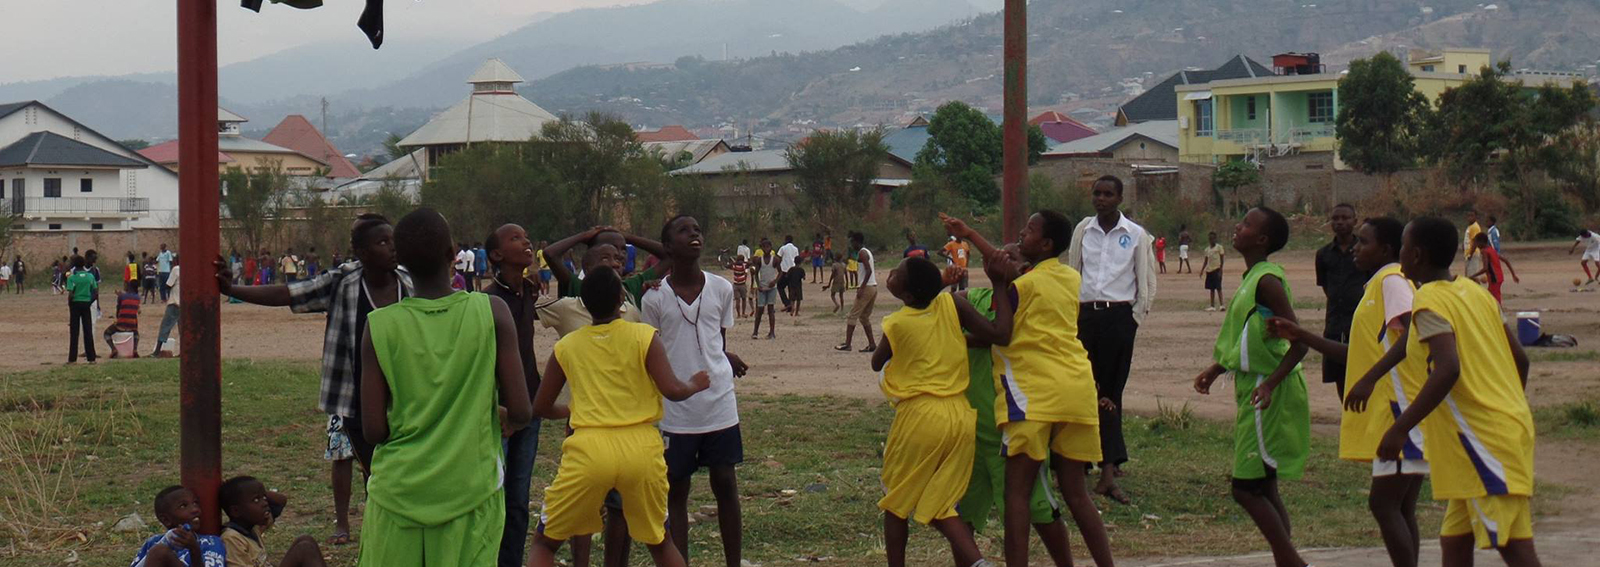 enfants jouant au burundi